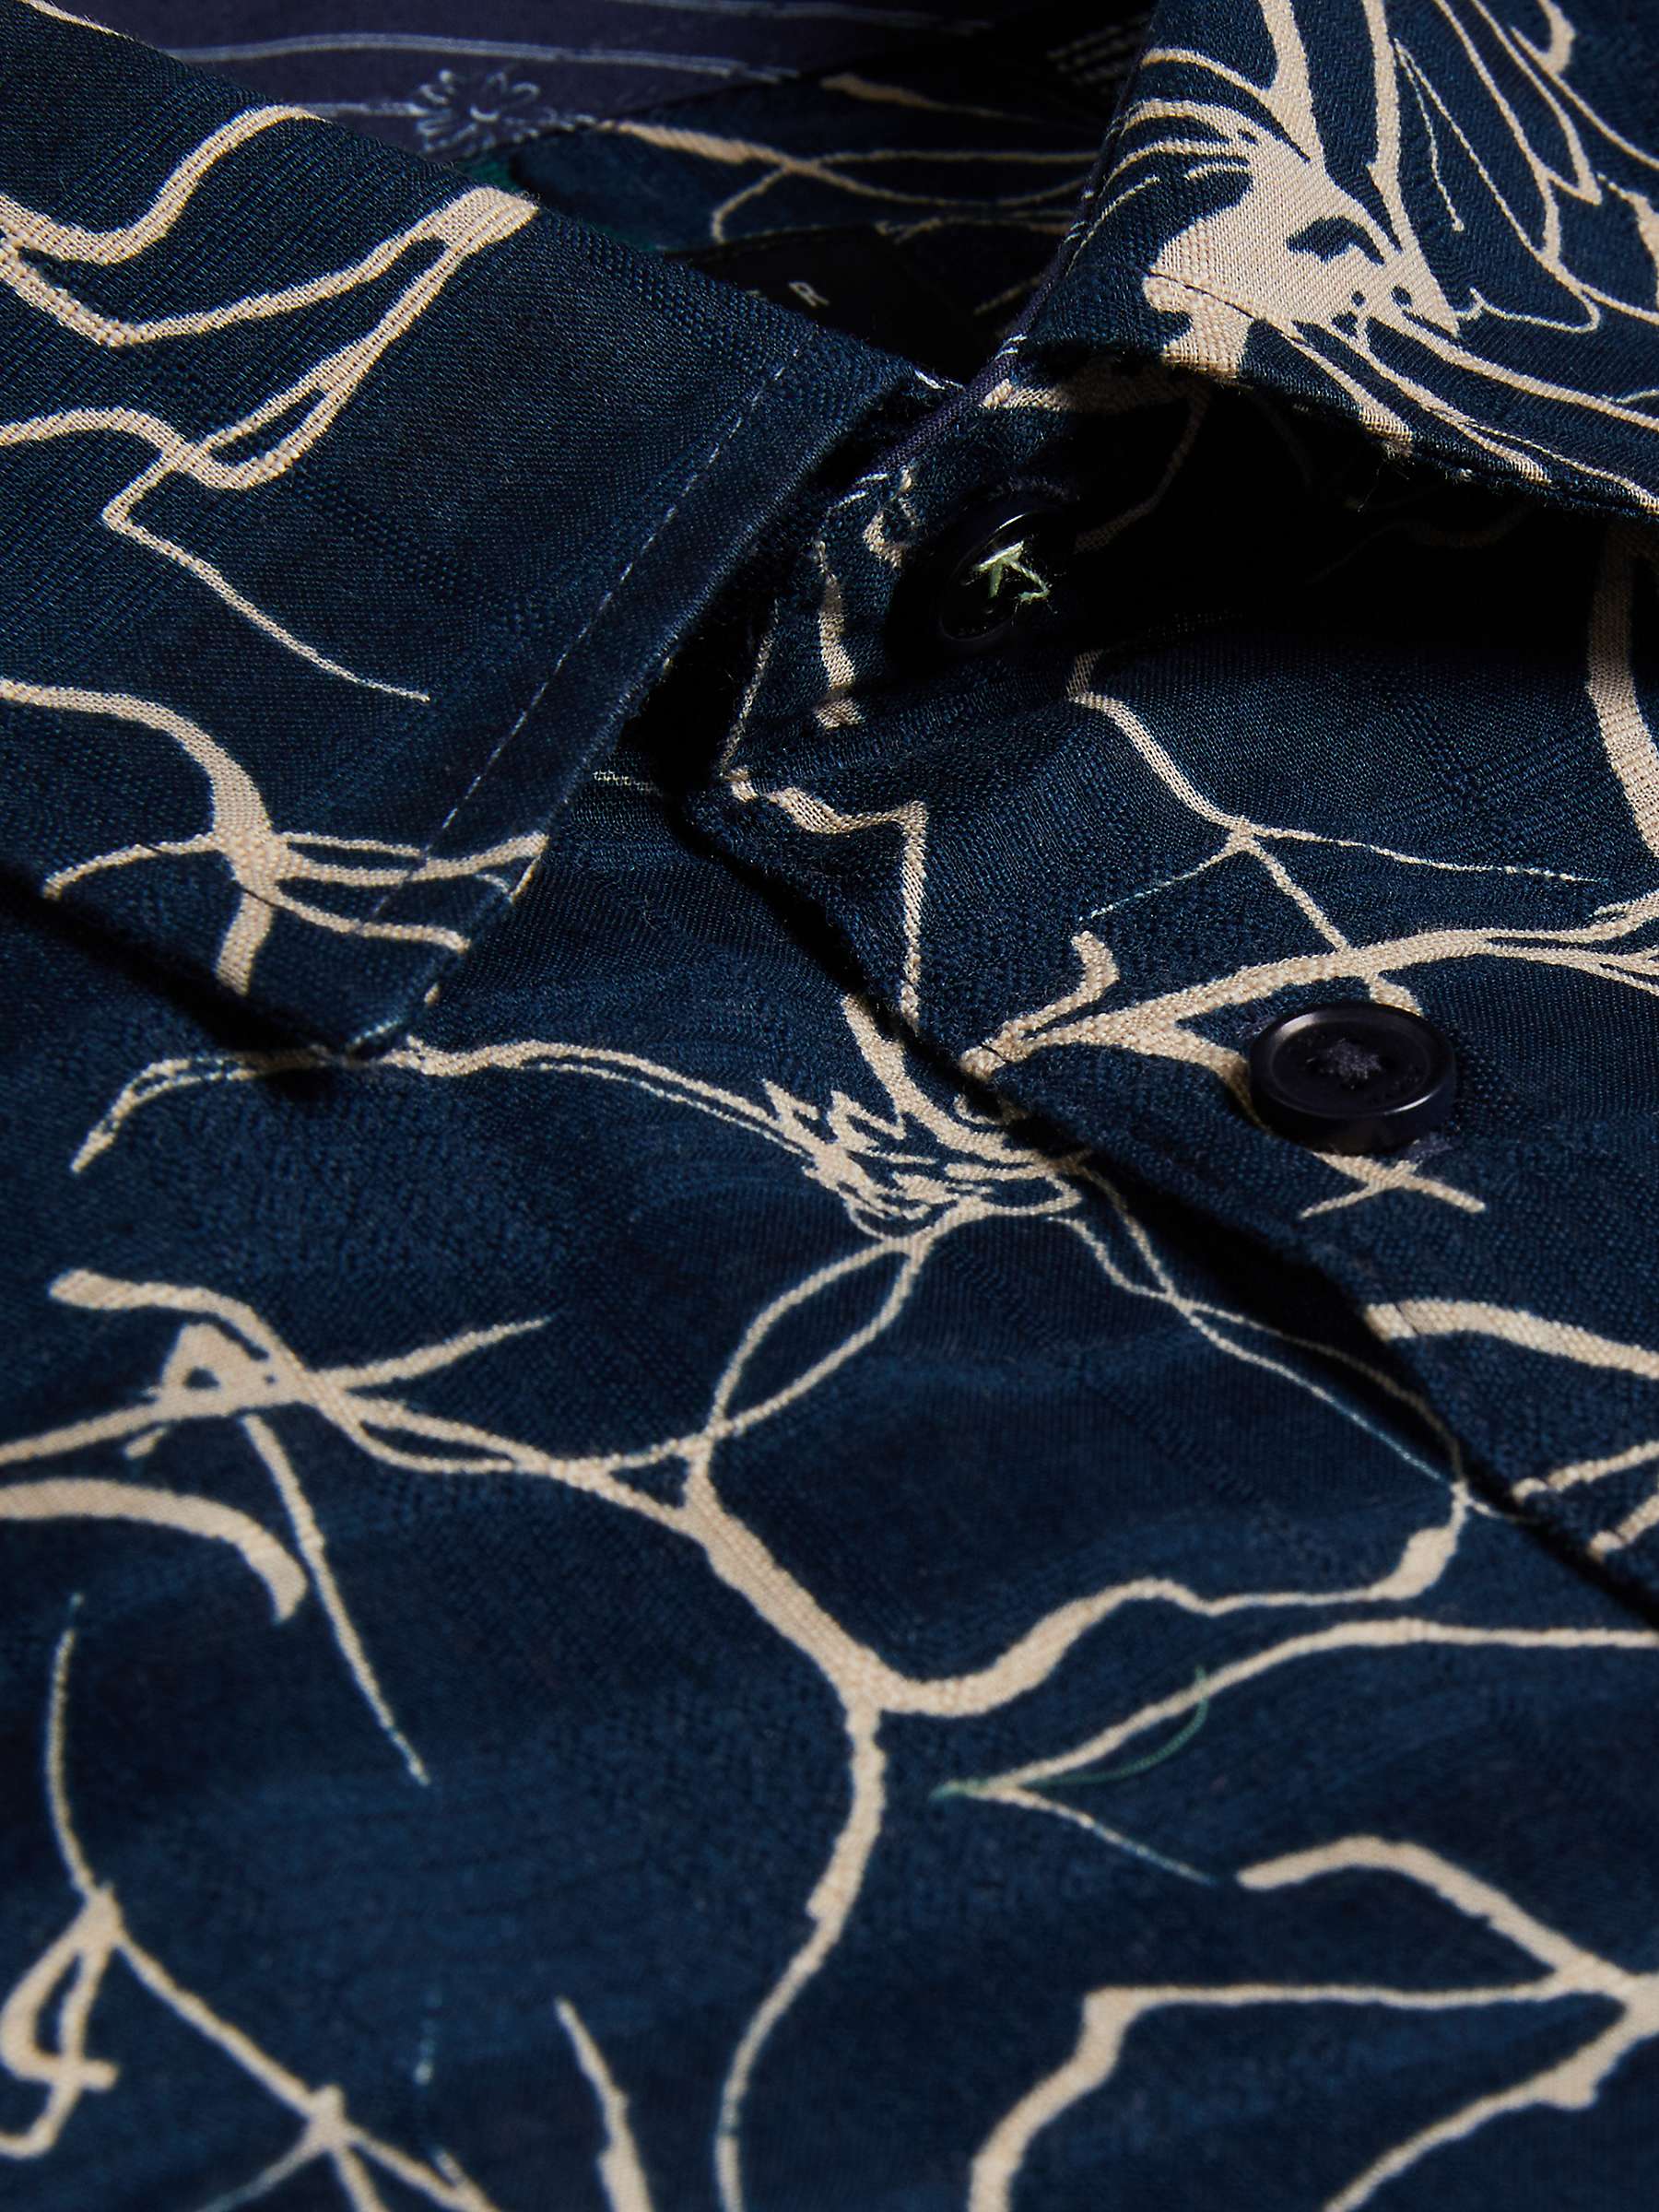 Buy Ted Baker Cavu Floral Outline Short Sleeve Cotton Shirt Online at johnlewis.com